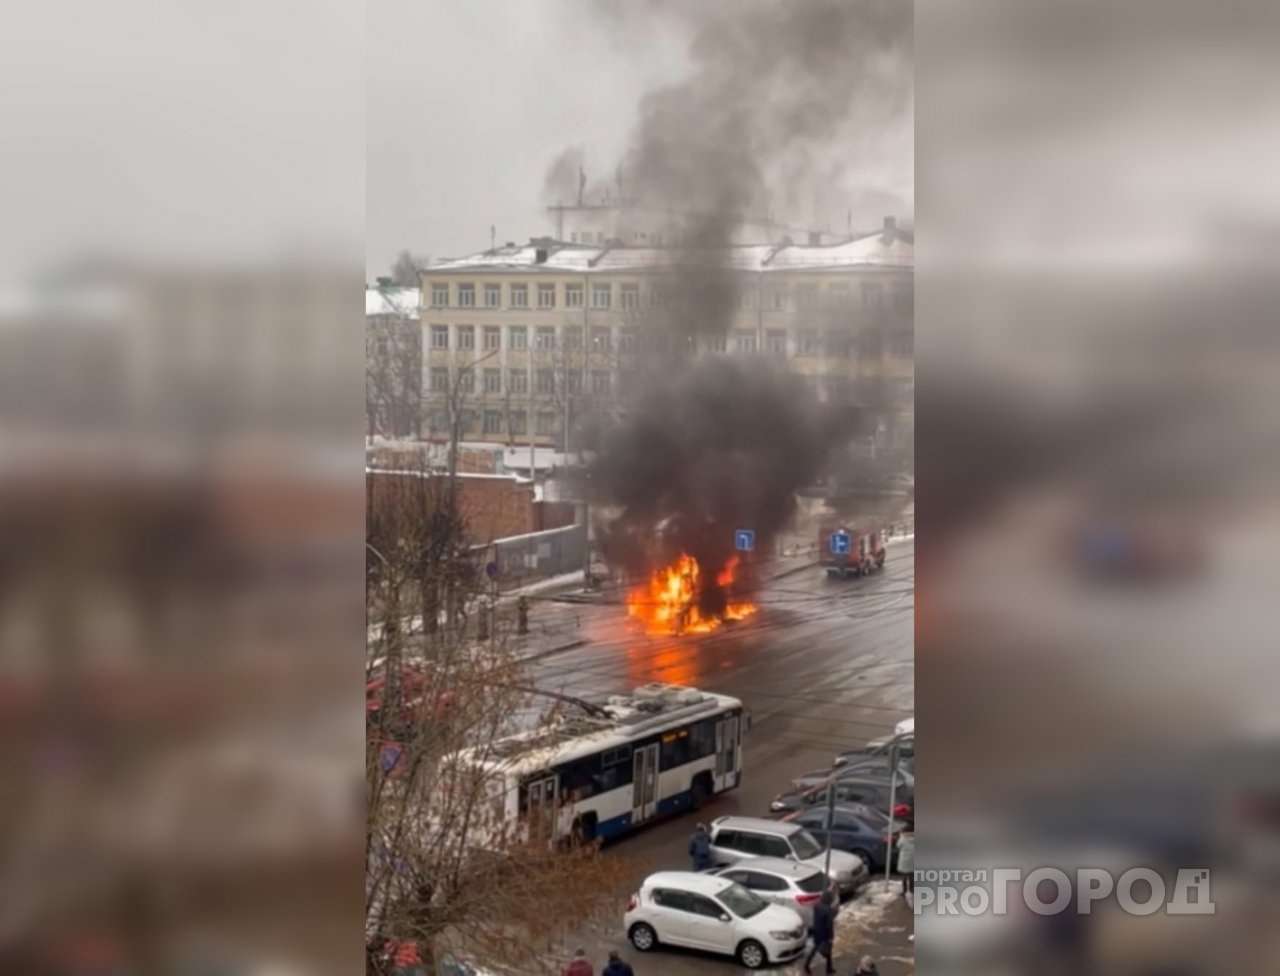 В центре Кирова во время движения загорелся автобус